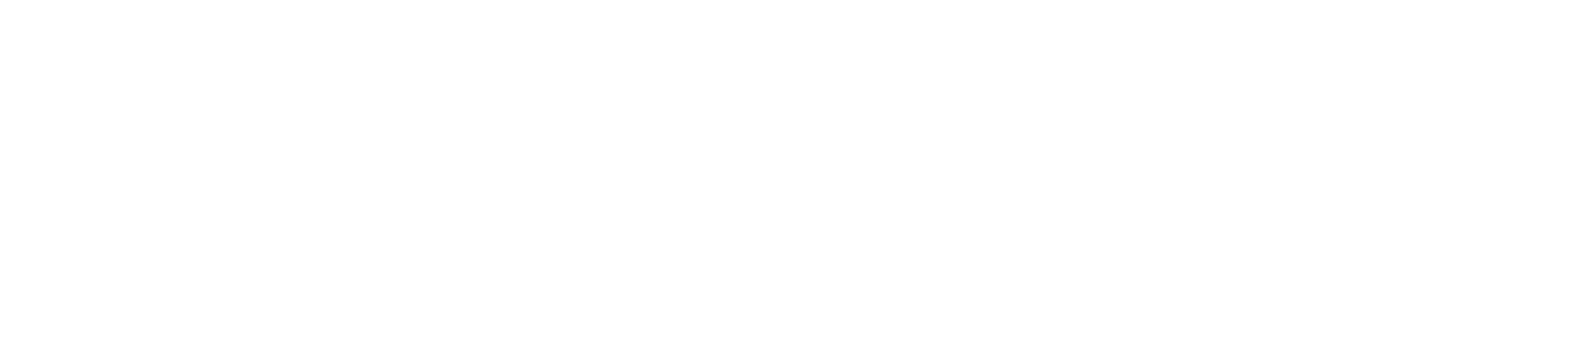 Sportsman's Warehouse logo for dark backgrounds (transparent PNG)